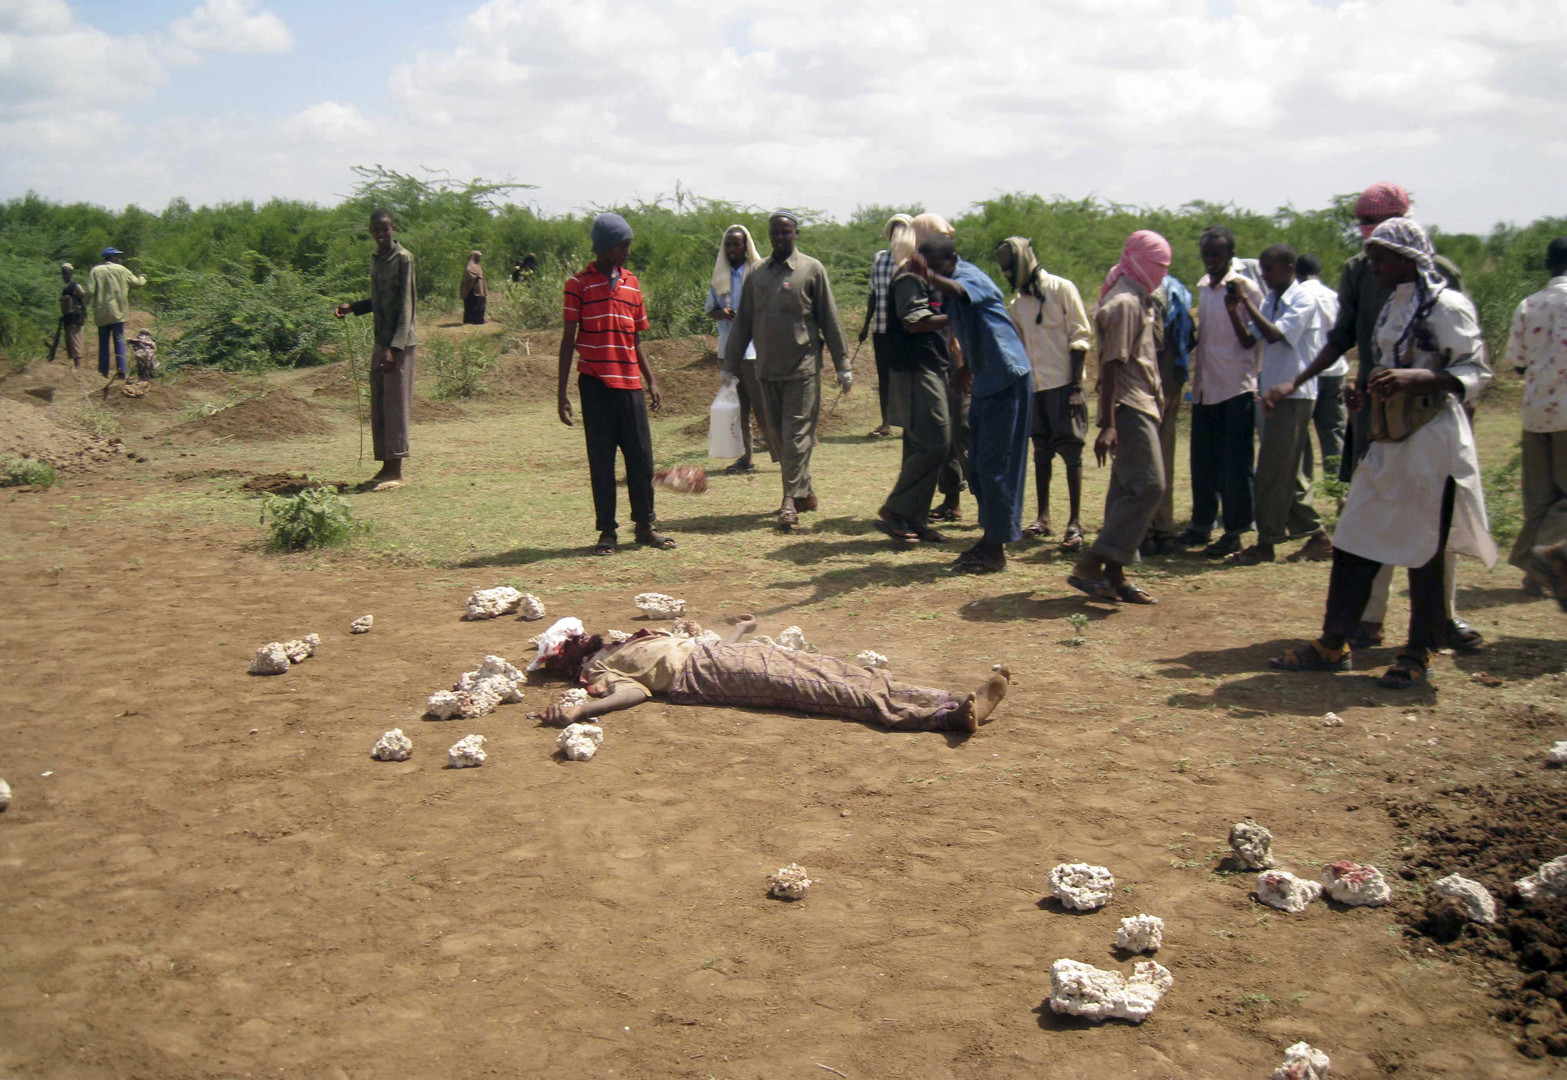 الصومال.. رجم سيدة حتى الموت لزواجها بـ11 رجلا